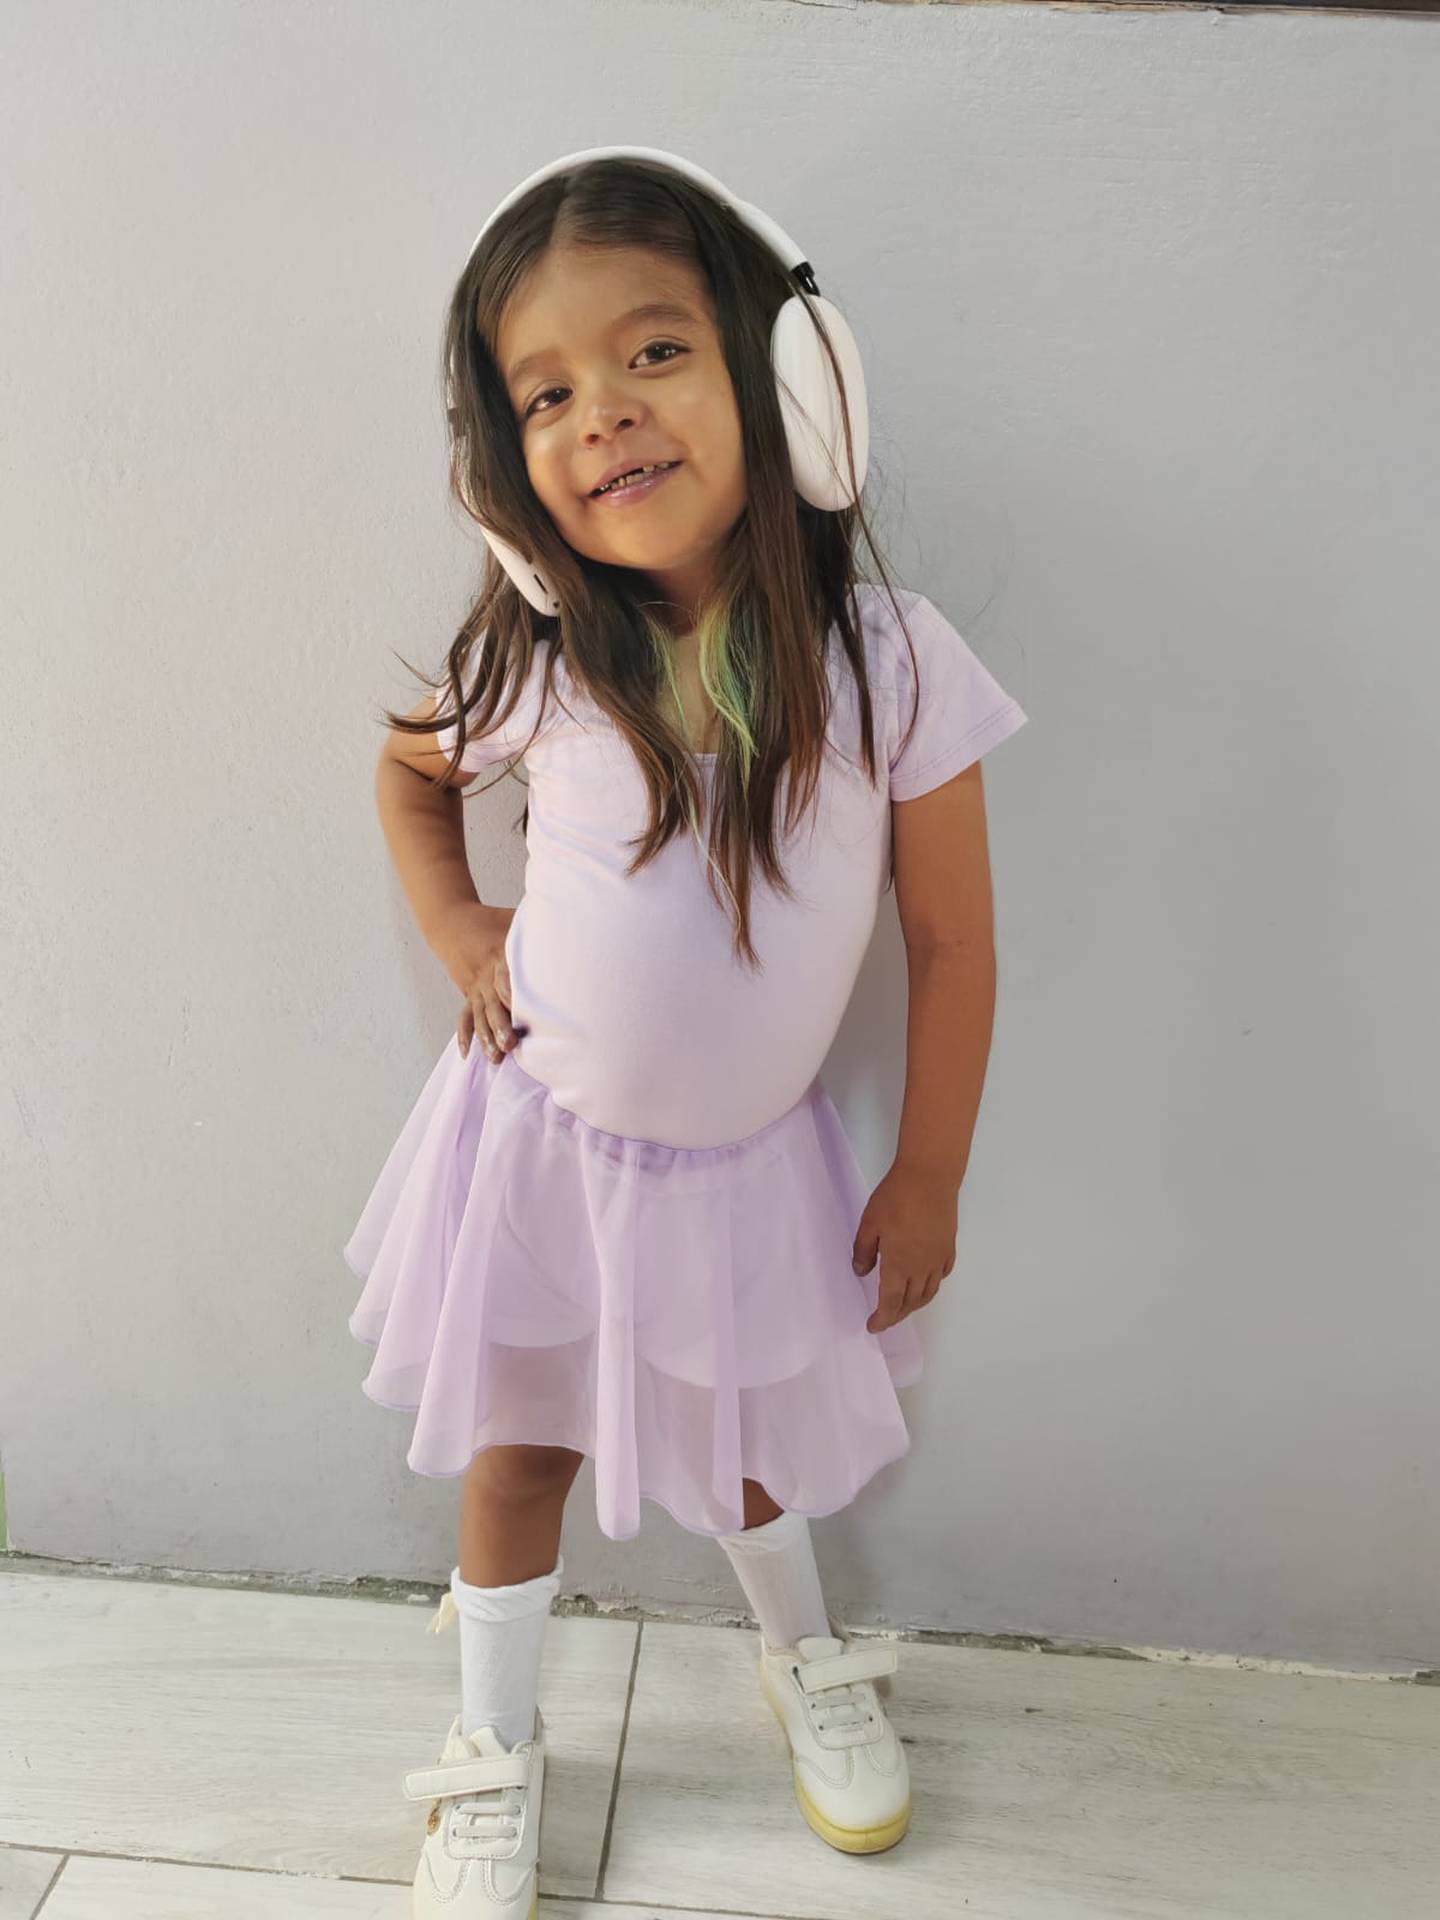 Alissa Solano Boza, una hermosa nicoyanita de cinco años de edad está que no cabe de contenta porque su amada Shakira disfruta de sus vacaciones en Costa Rica